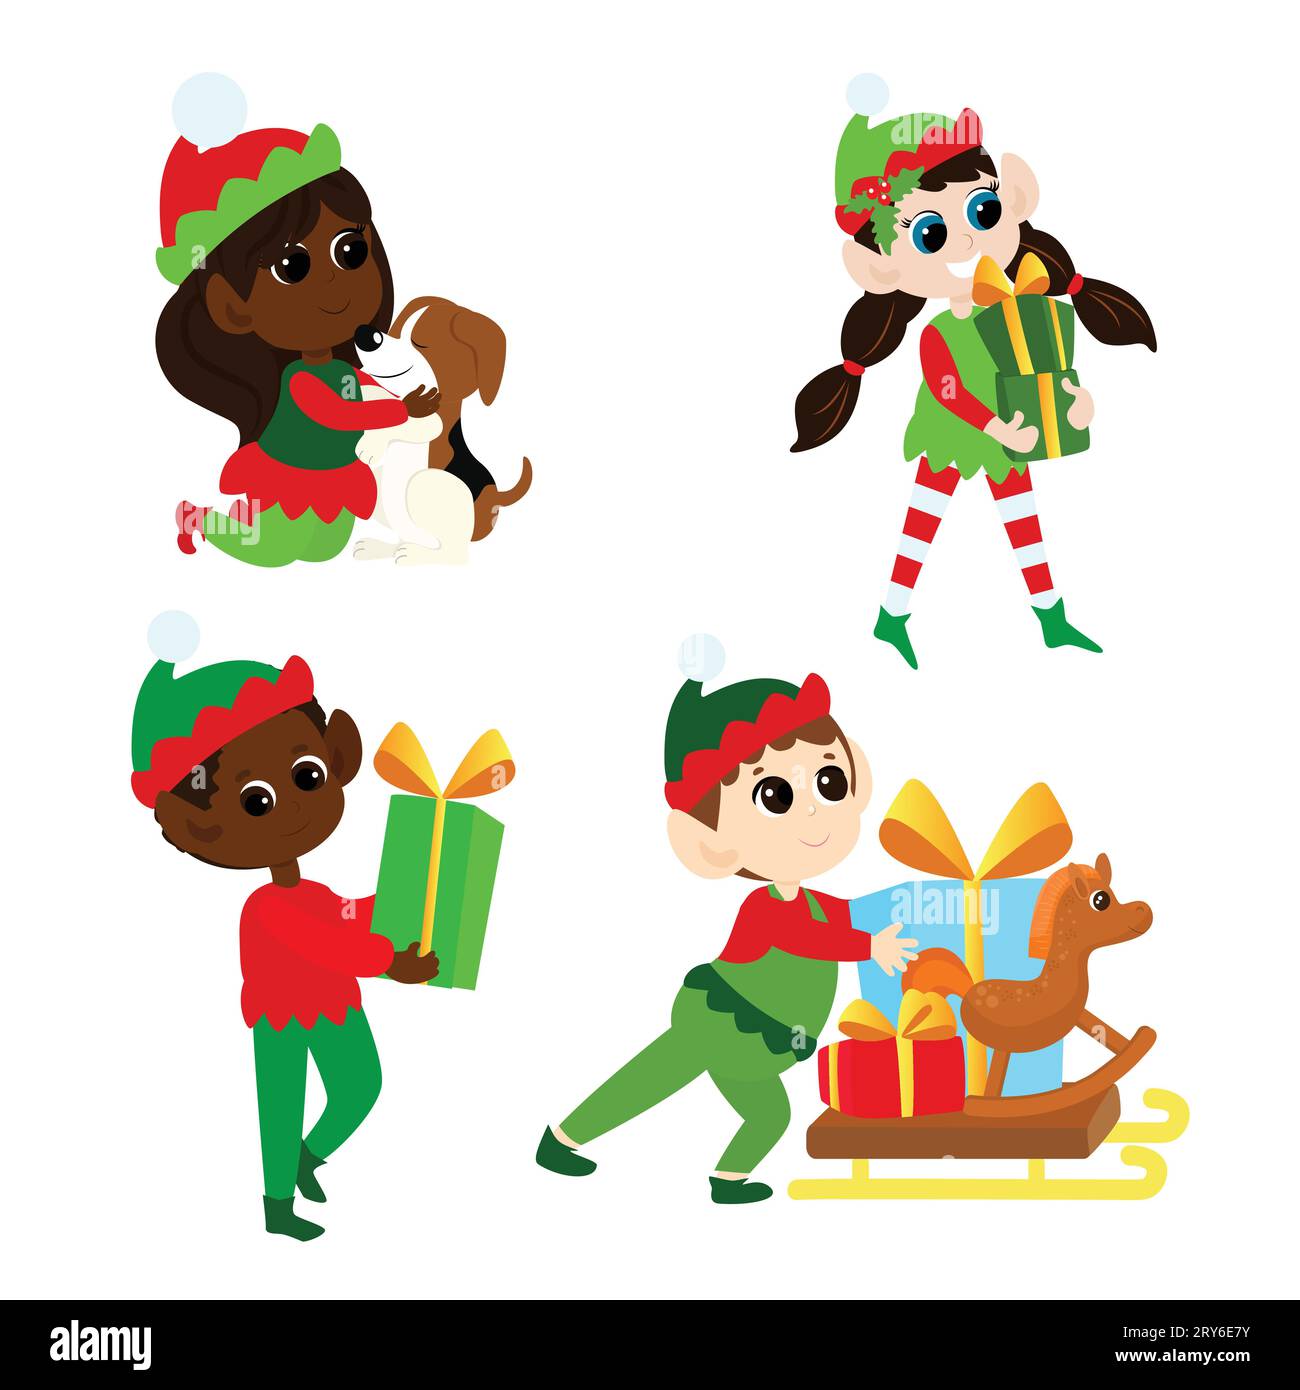 Mettez les elfes de Noël. Garçons et filles multiculturels en costumes traditionnels d'elfe. Les aides du Père Noël sont heureuses. Ils dansent, sourient, apportent des cadeaux. Illustration de Vecteur